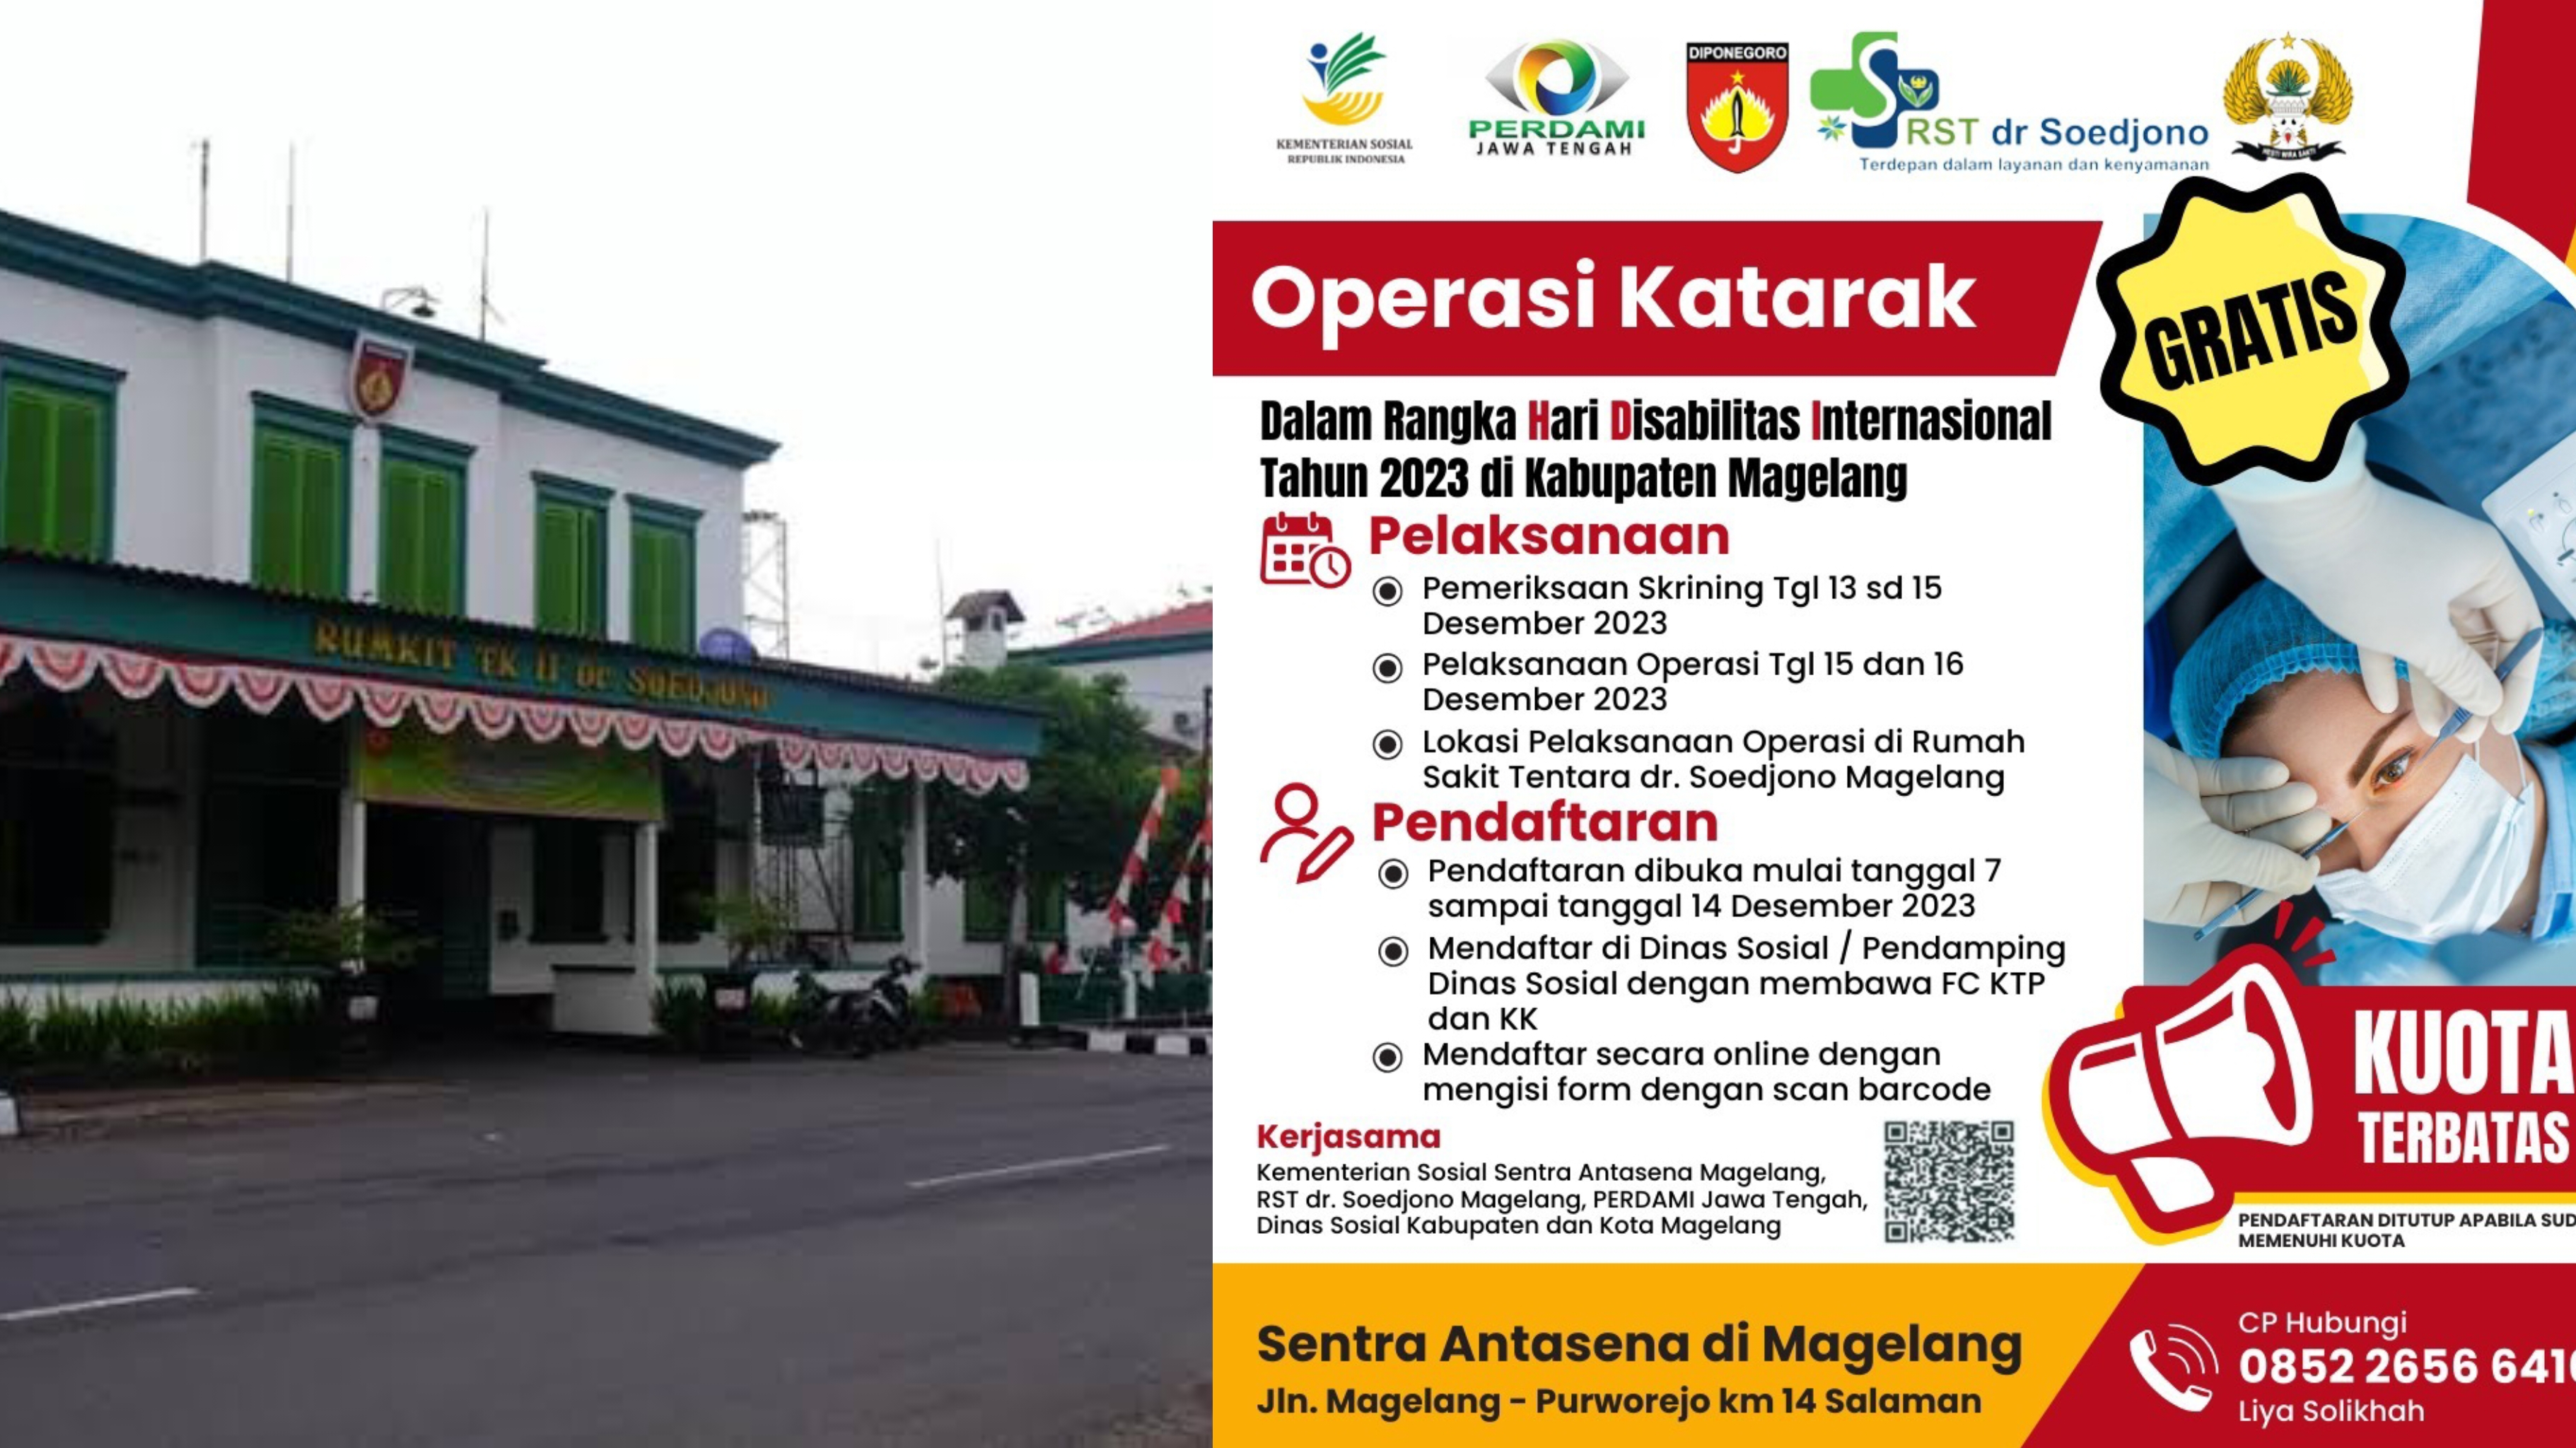 Sentra Antasena Magelang Gelar Operasi Katarak Gratis Bagi Warga Kabupaten dan Kota Magelang, Cek Tanggalnya